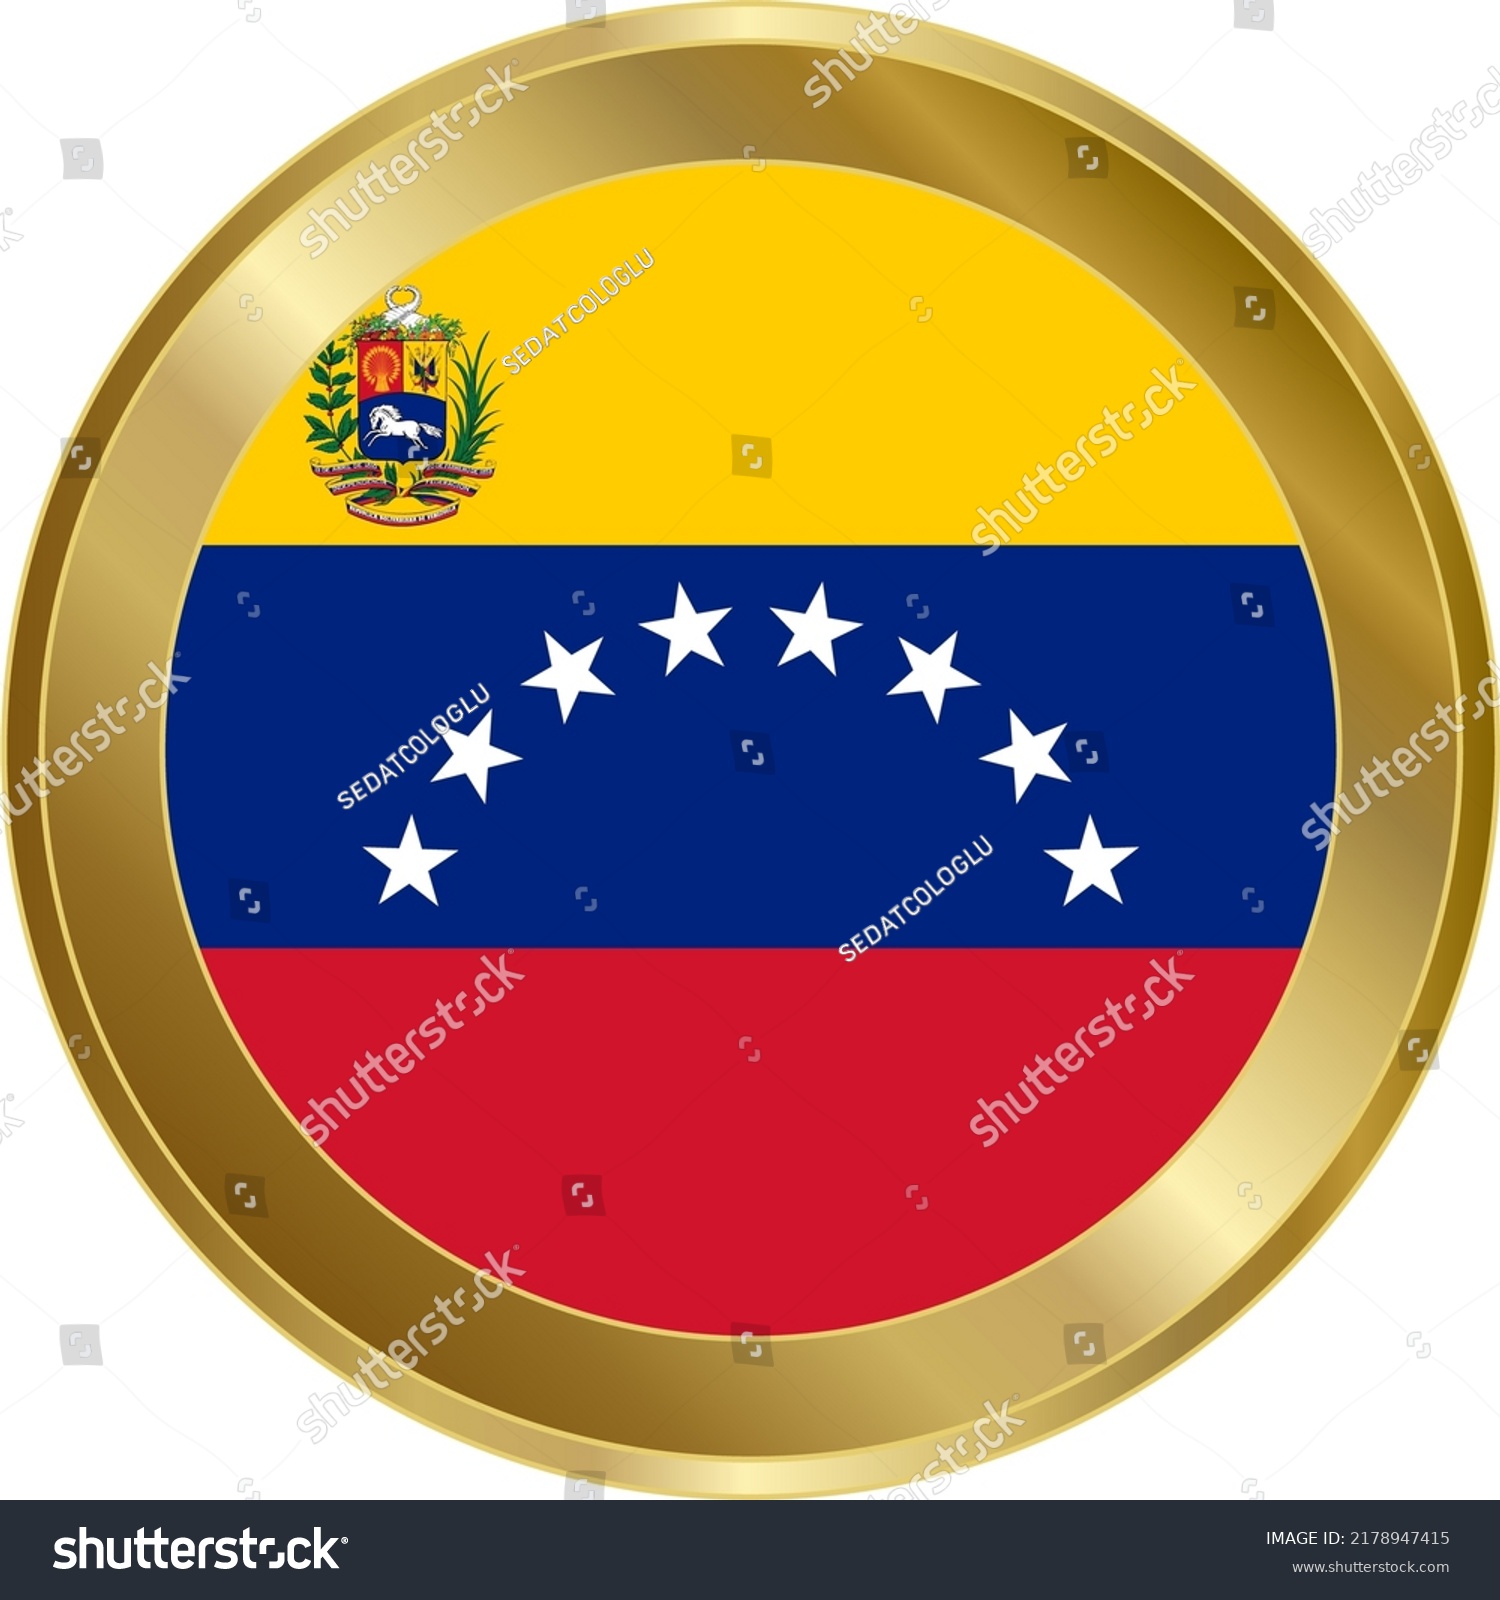 6 Bandera venezuela vector Images, Stock Photos & Vectors | Shutterstock